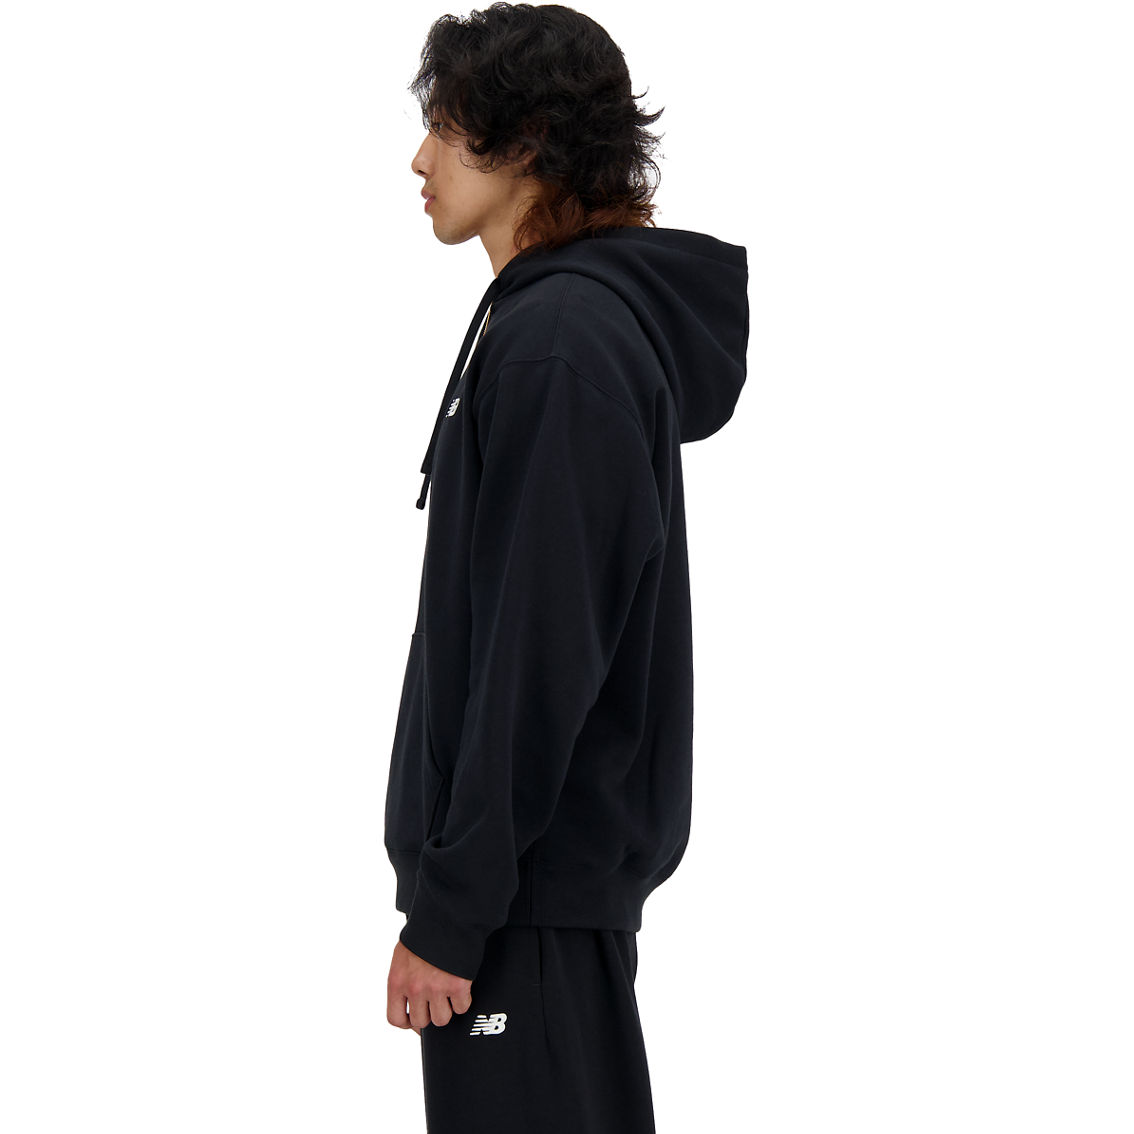 New Balance Sport Essentials Black Fleece Hoodie - Image 3 of 4